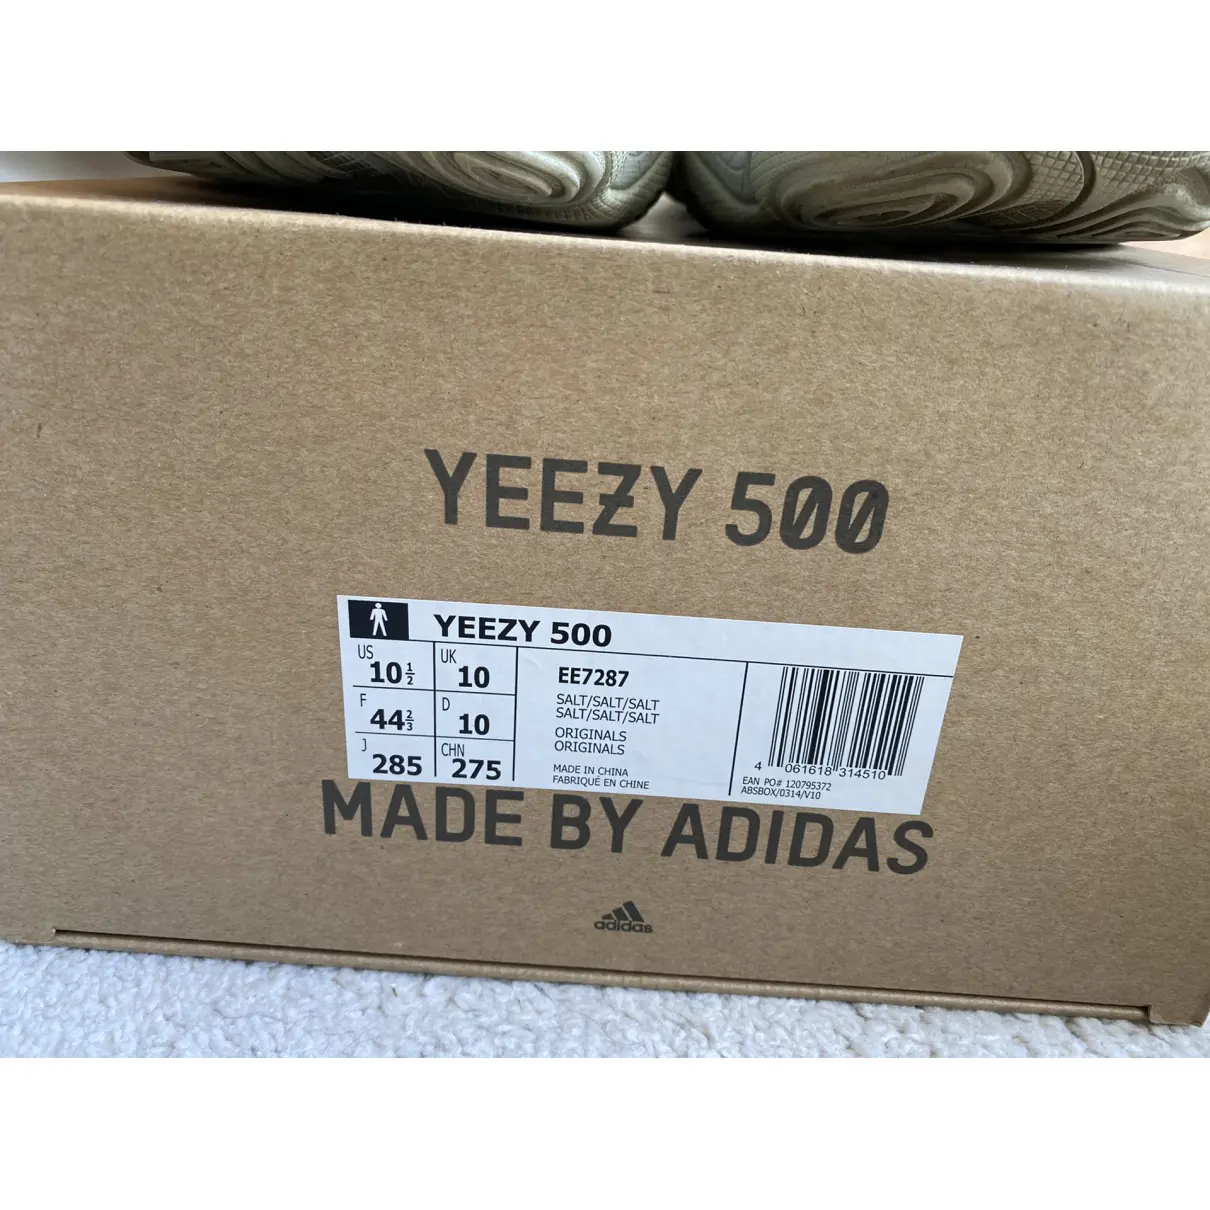 500 low trainers Yeezy x Adidas